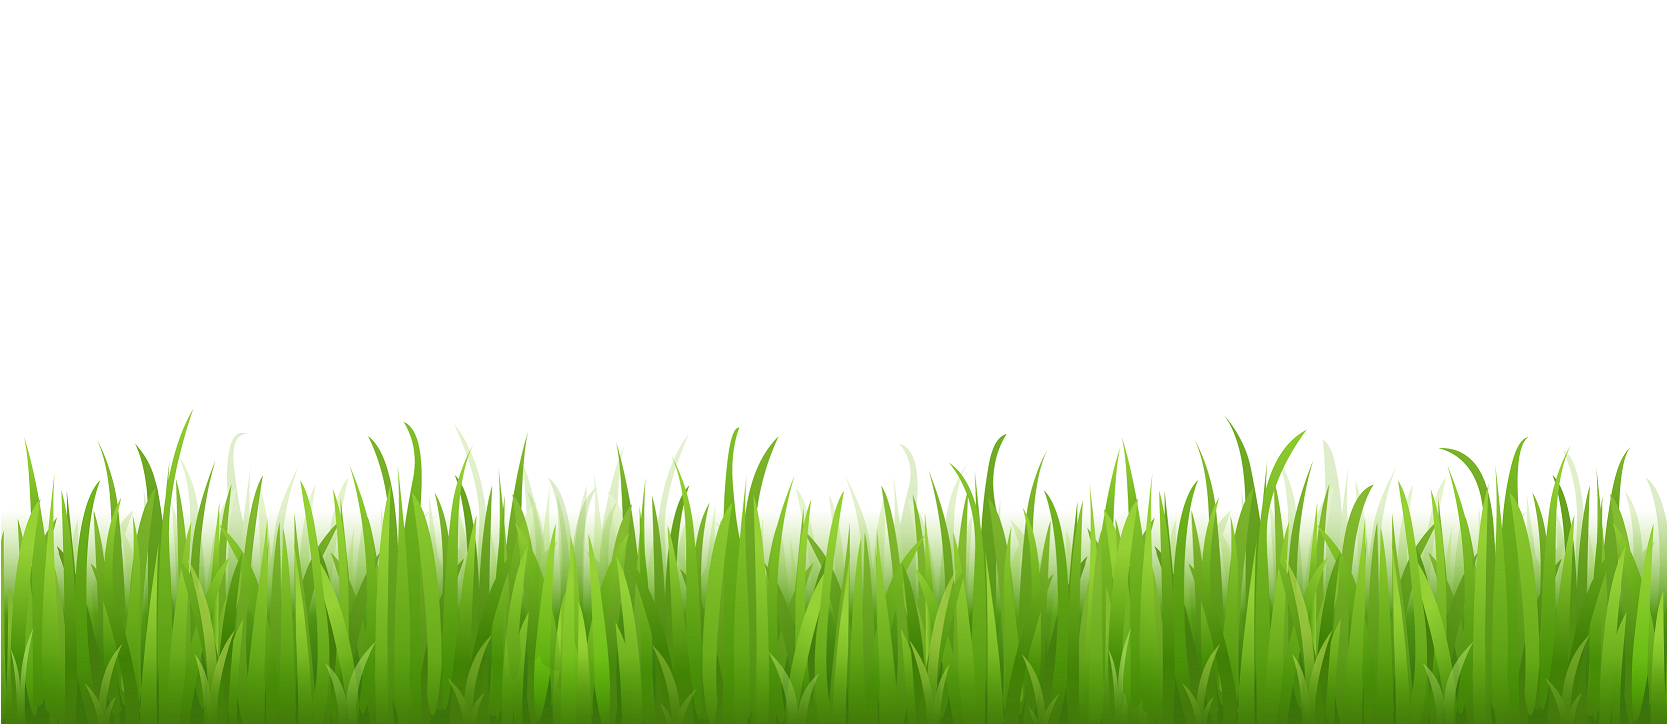 Fondo de imagen PNG de hierba verde